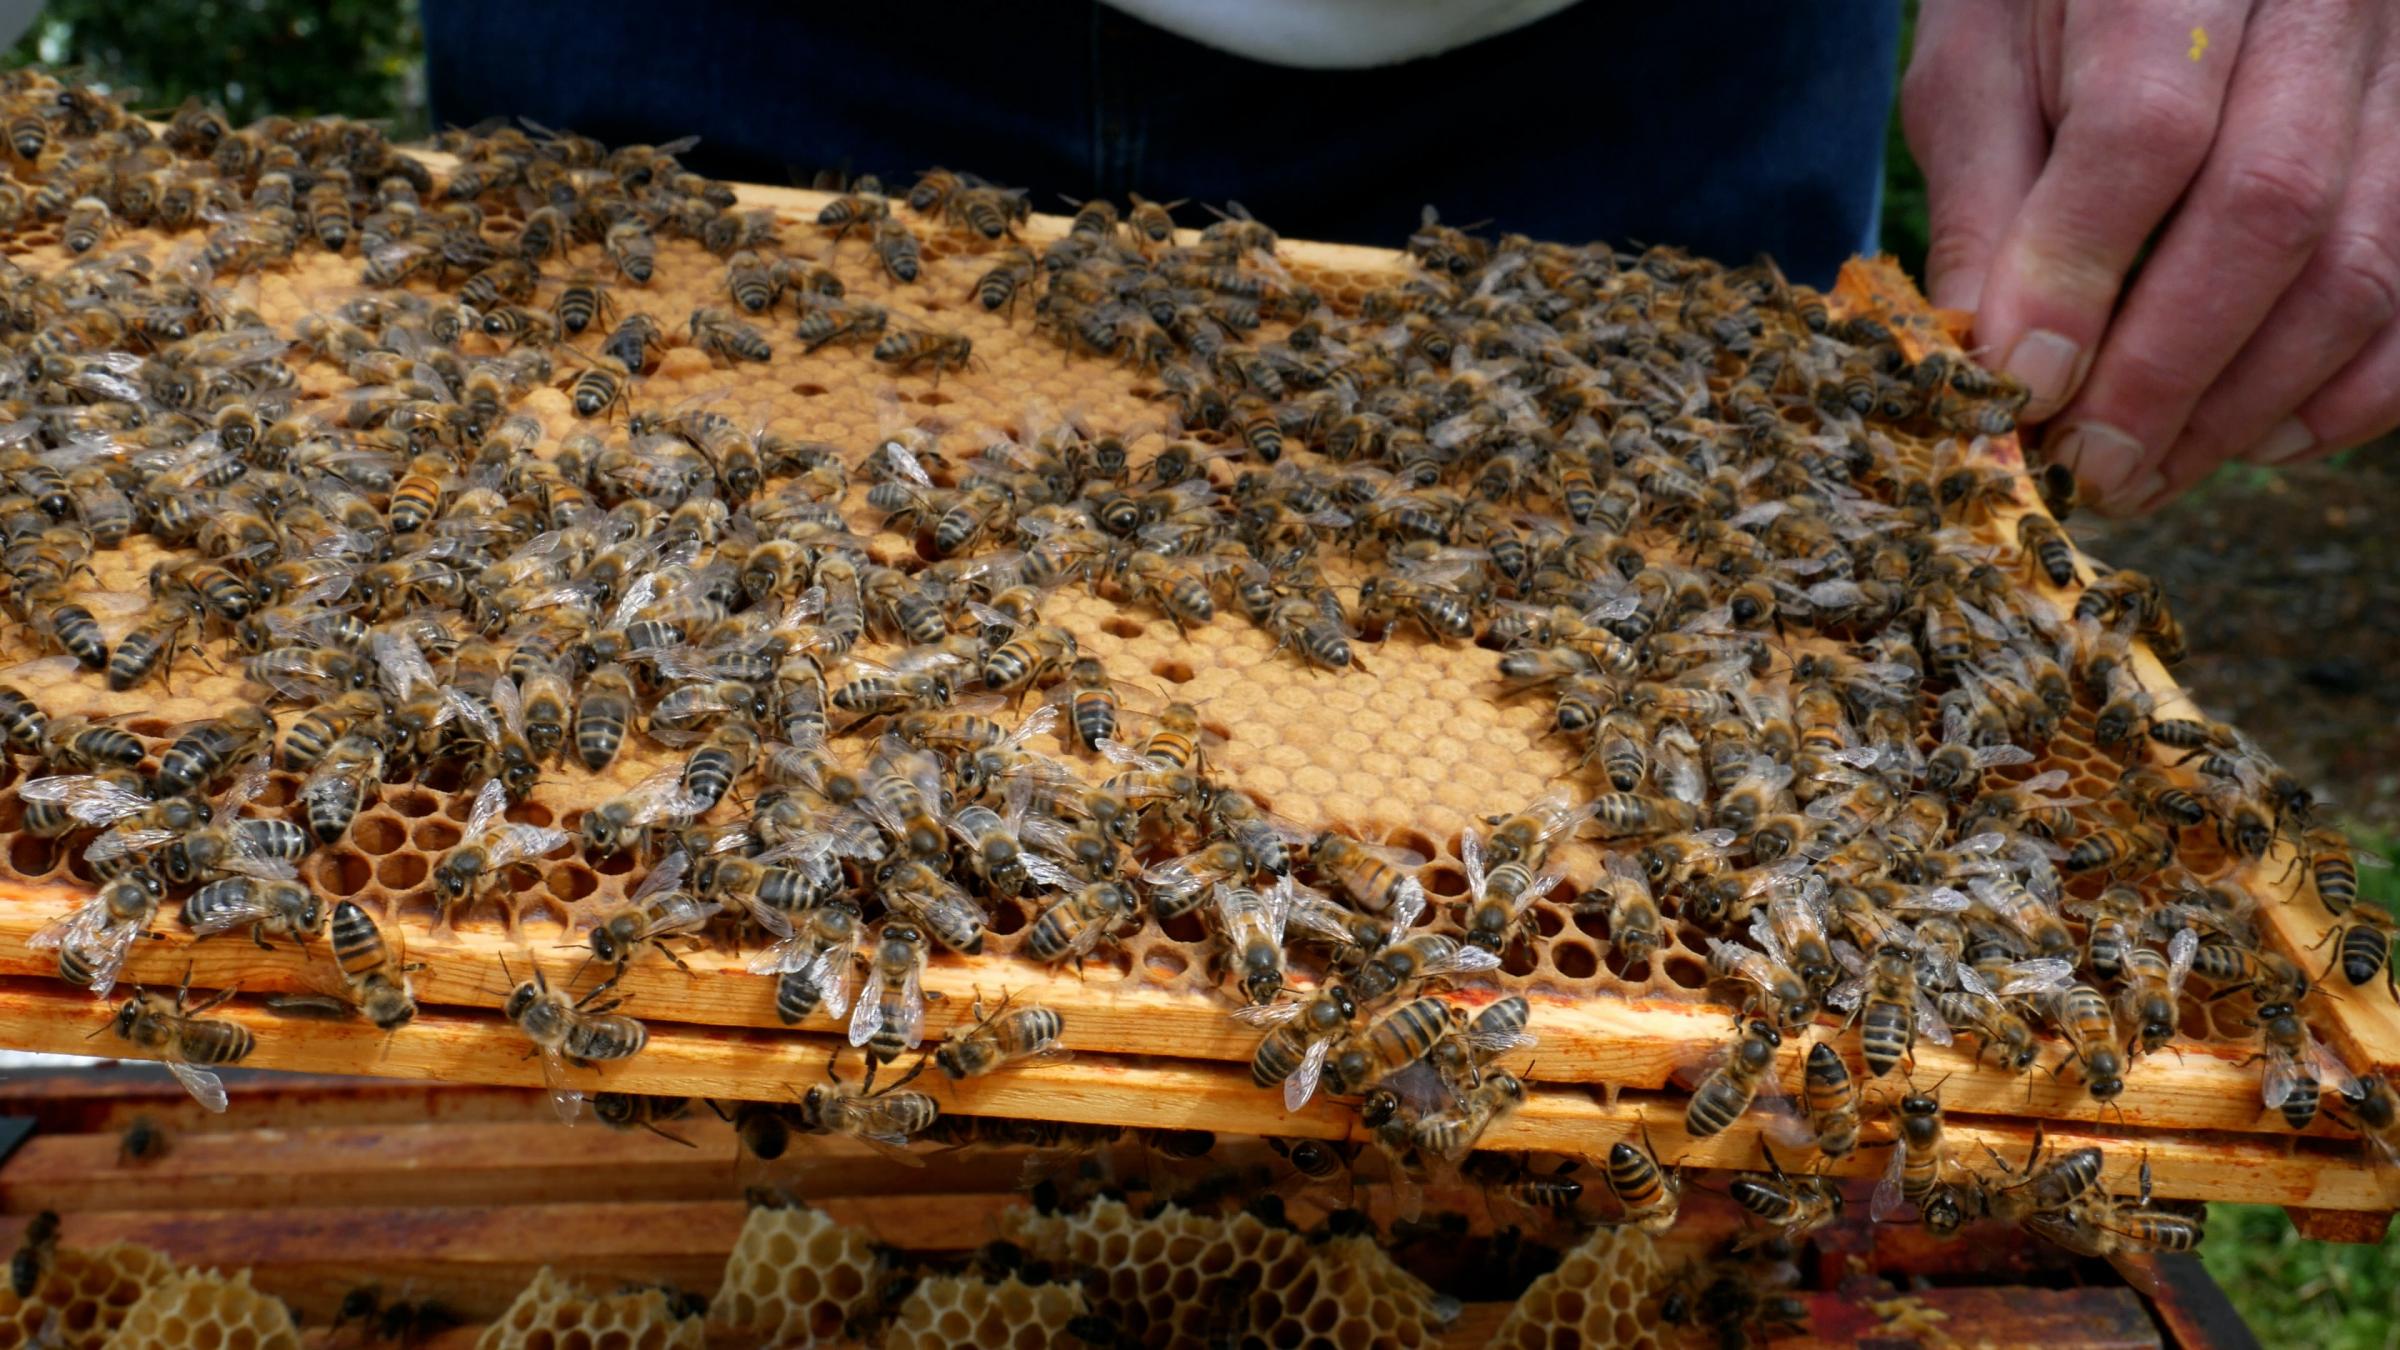 British honeybees at Moneypenny in Wrexham.